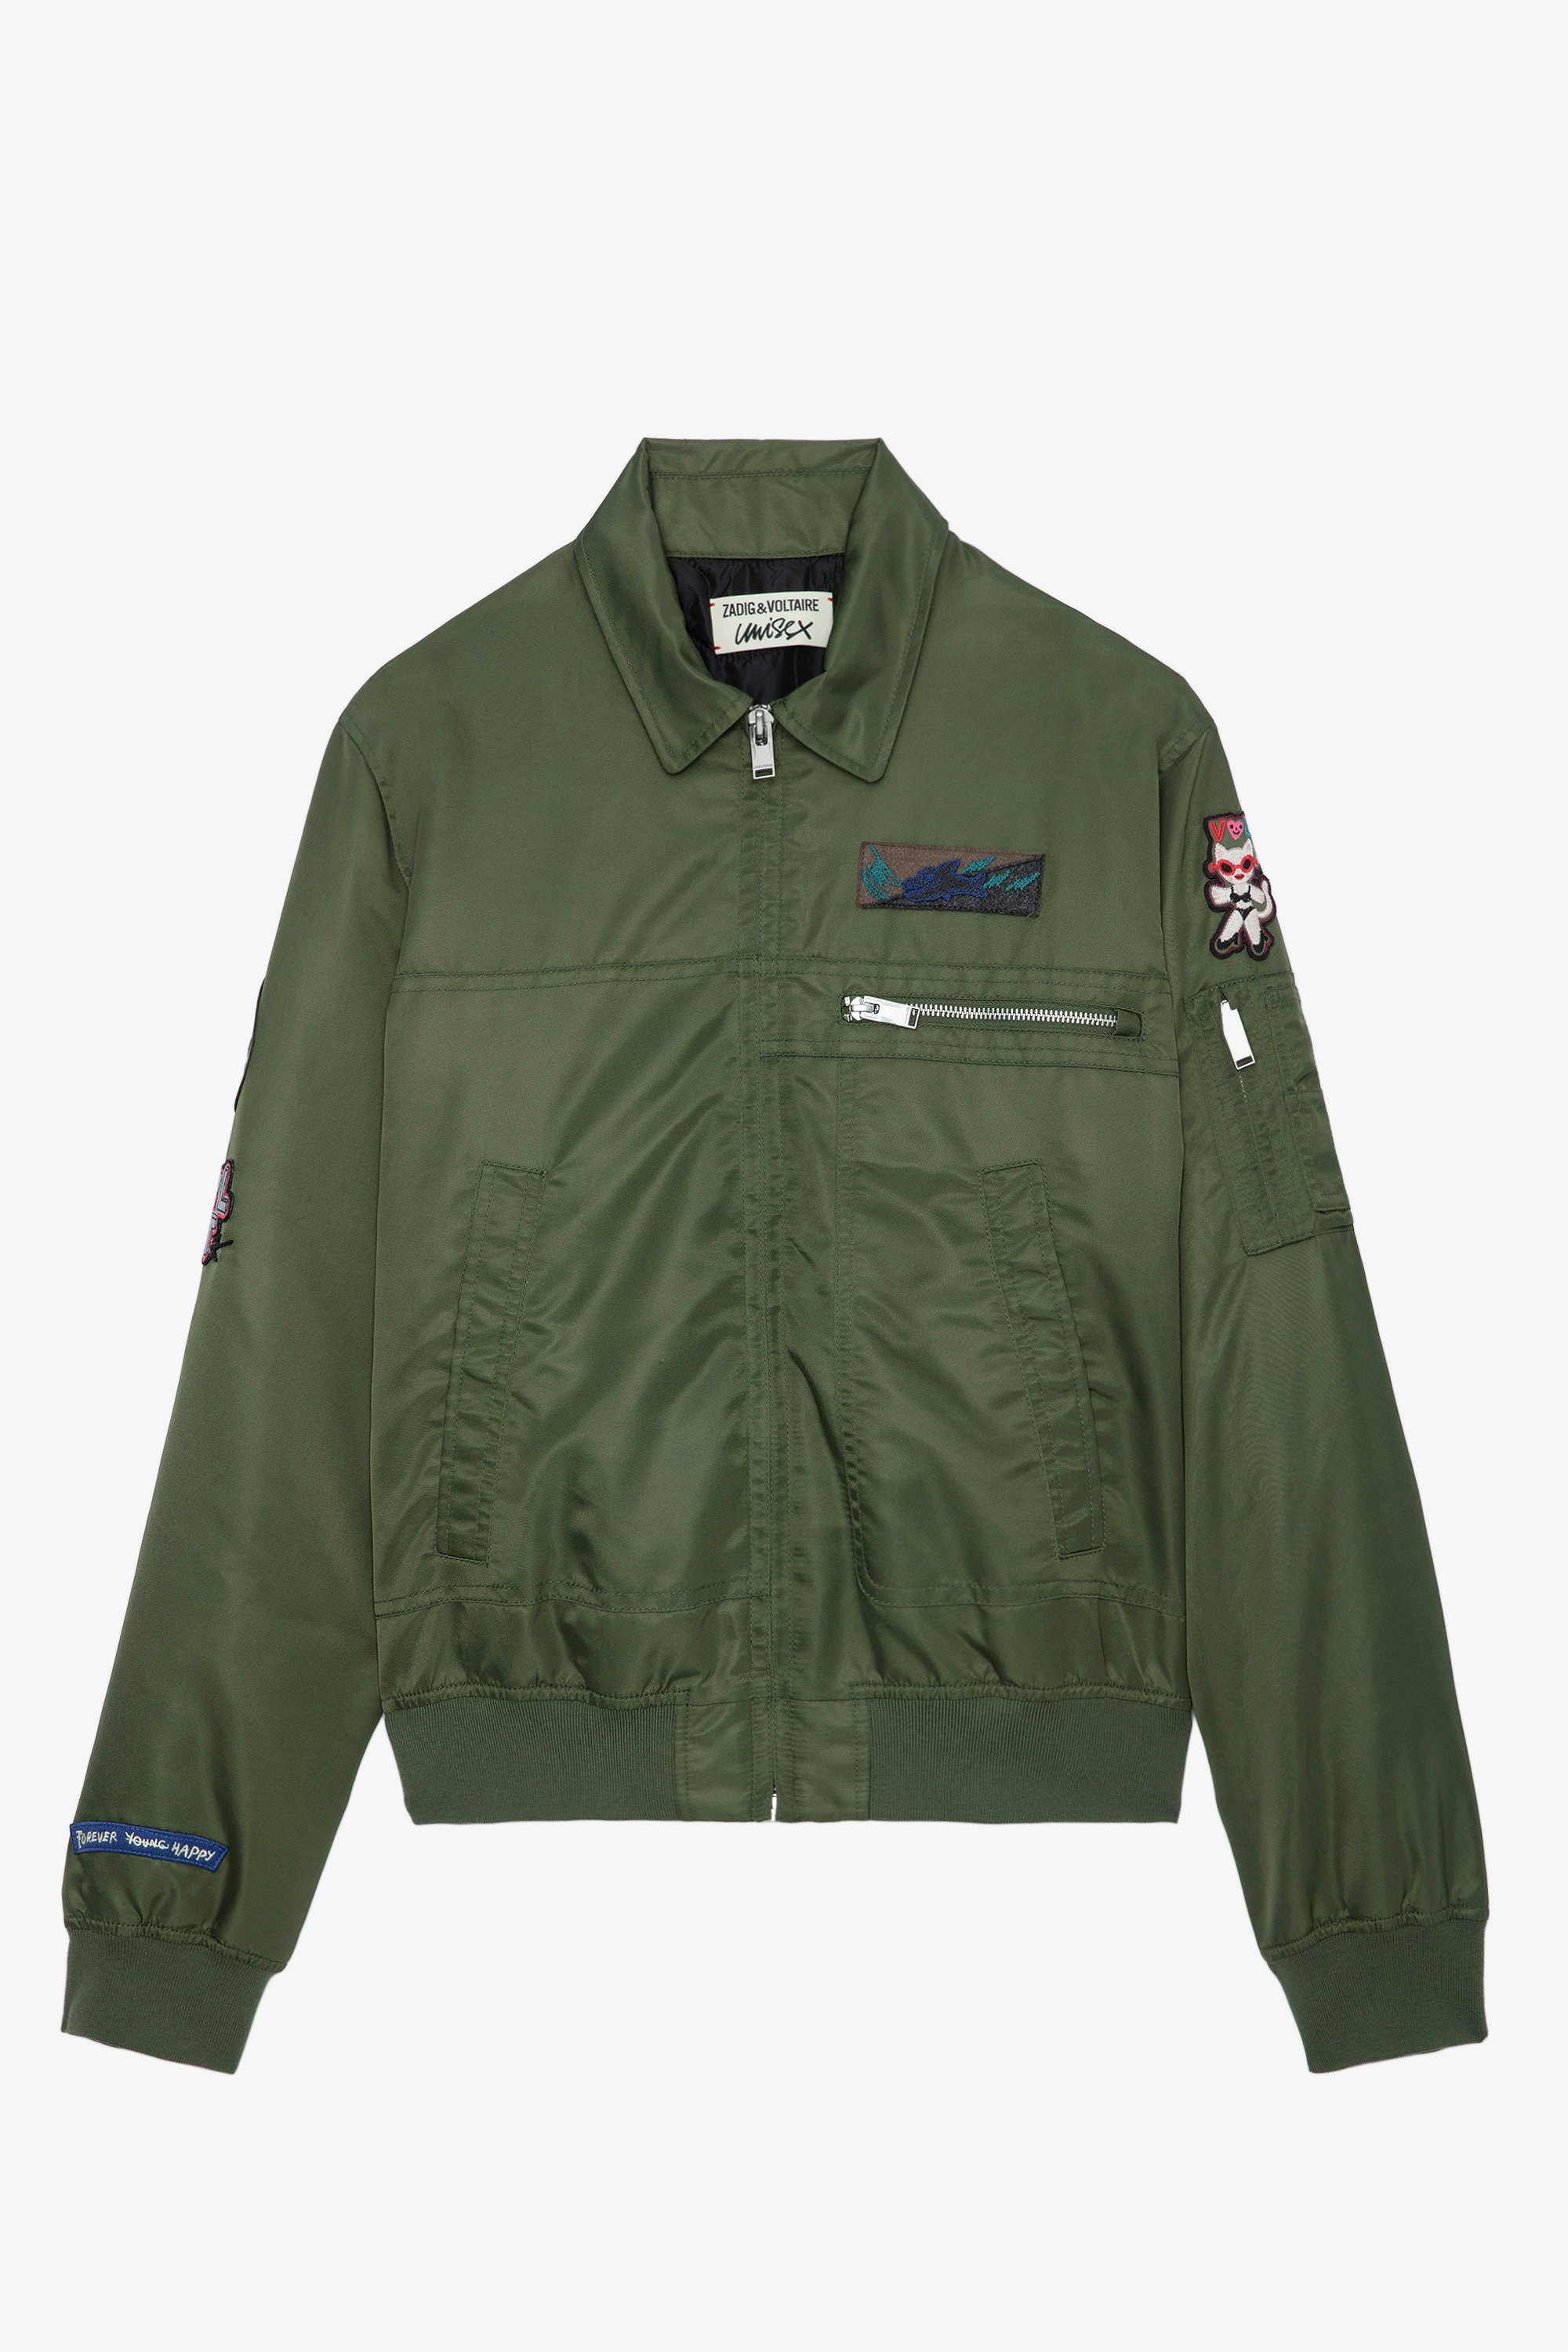 Bolid Jacket - Khaki jacket with zip fastening, pockets and customised details designed by Humberto Cruz.